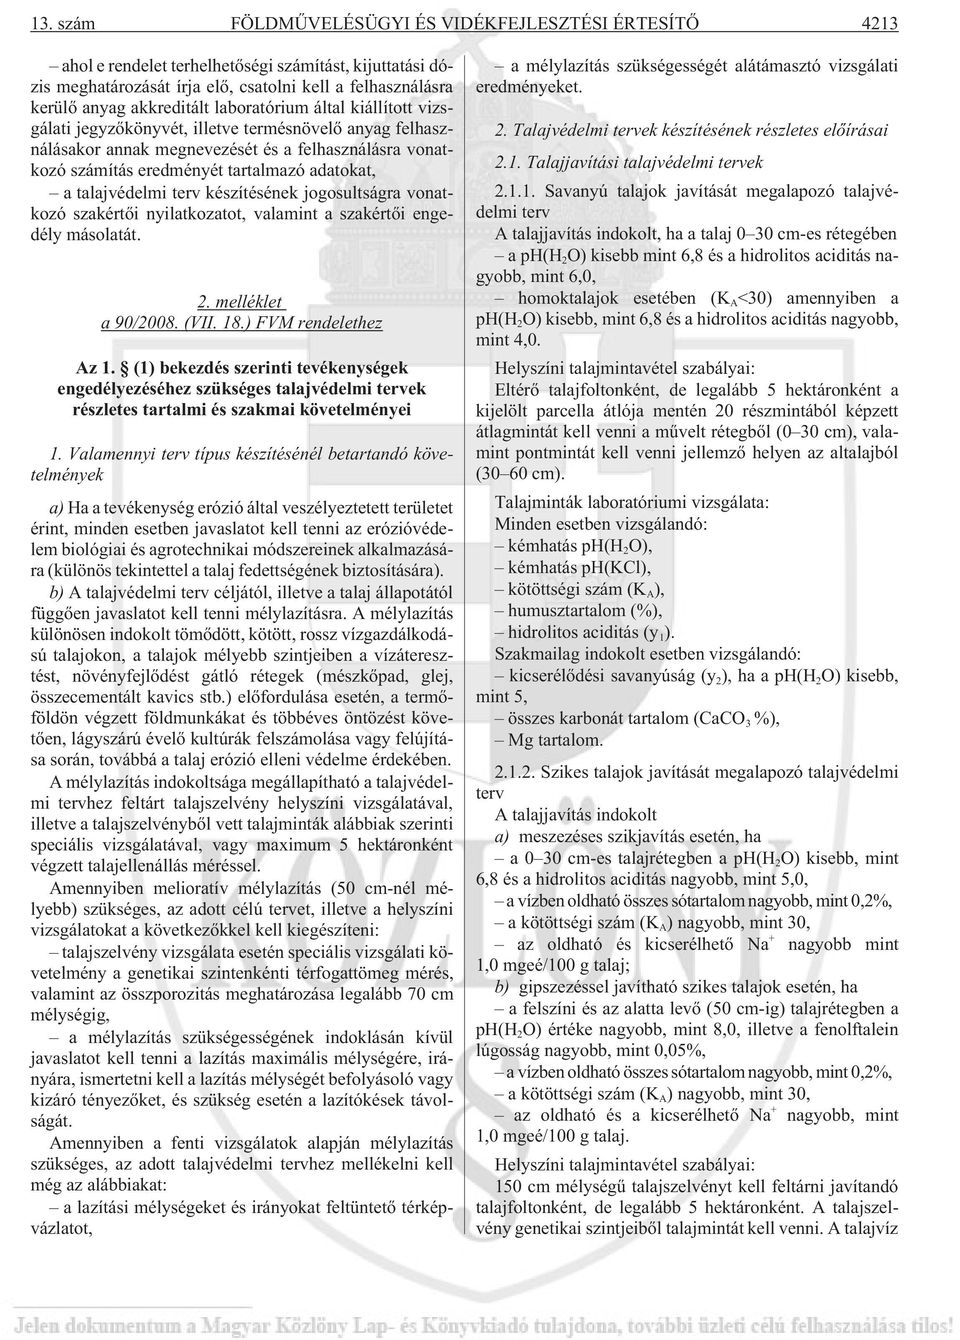 talajvédelmi terv készítésének jogosultságra vonatkozó szakértõi nyilatkozatot, valamint a szakértõi engedély másolatát. 2. melléklet a 90/2008. (VII. 18.) FVM rendelethez Az 1.